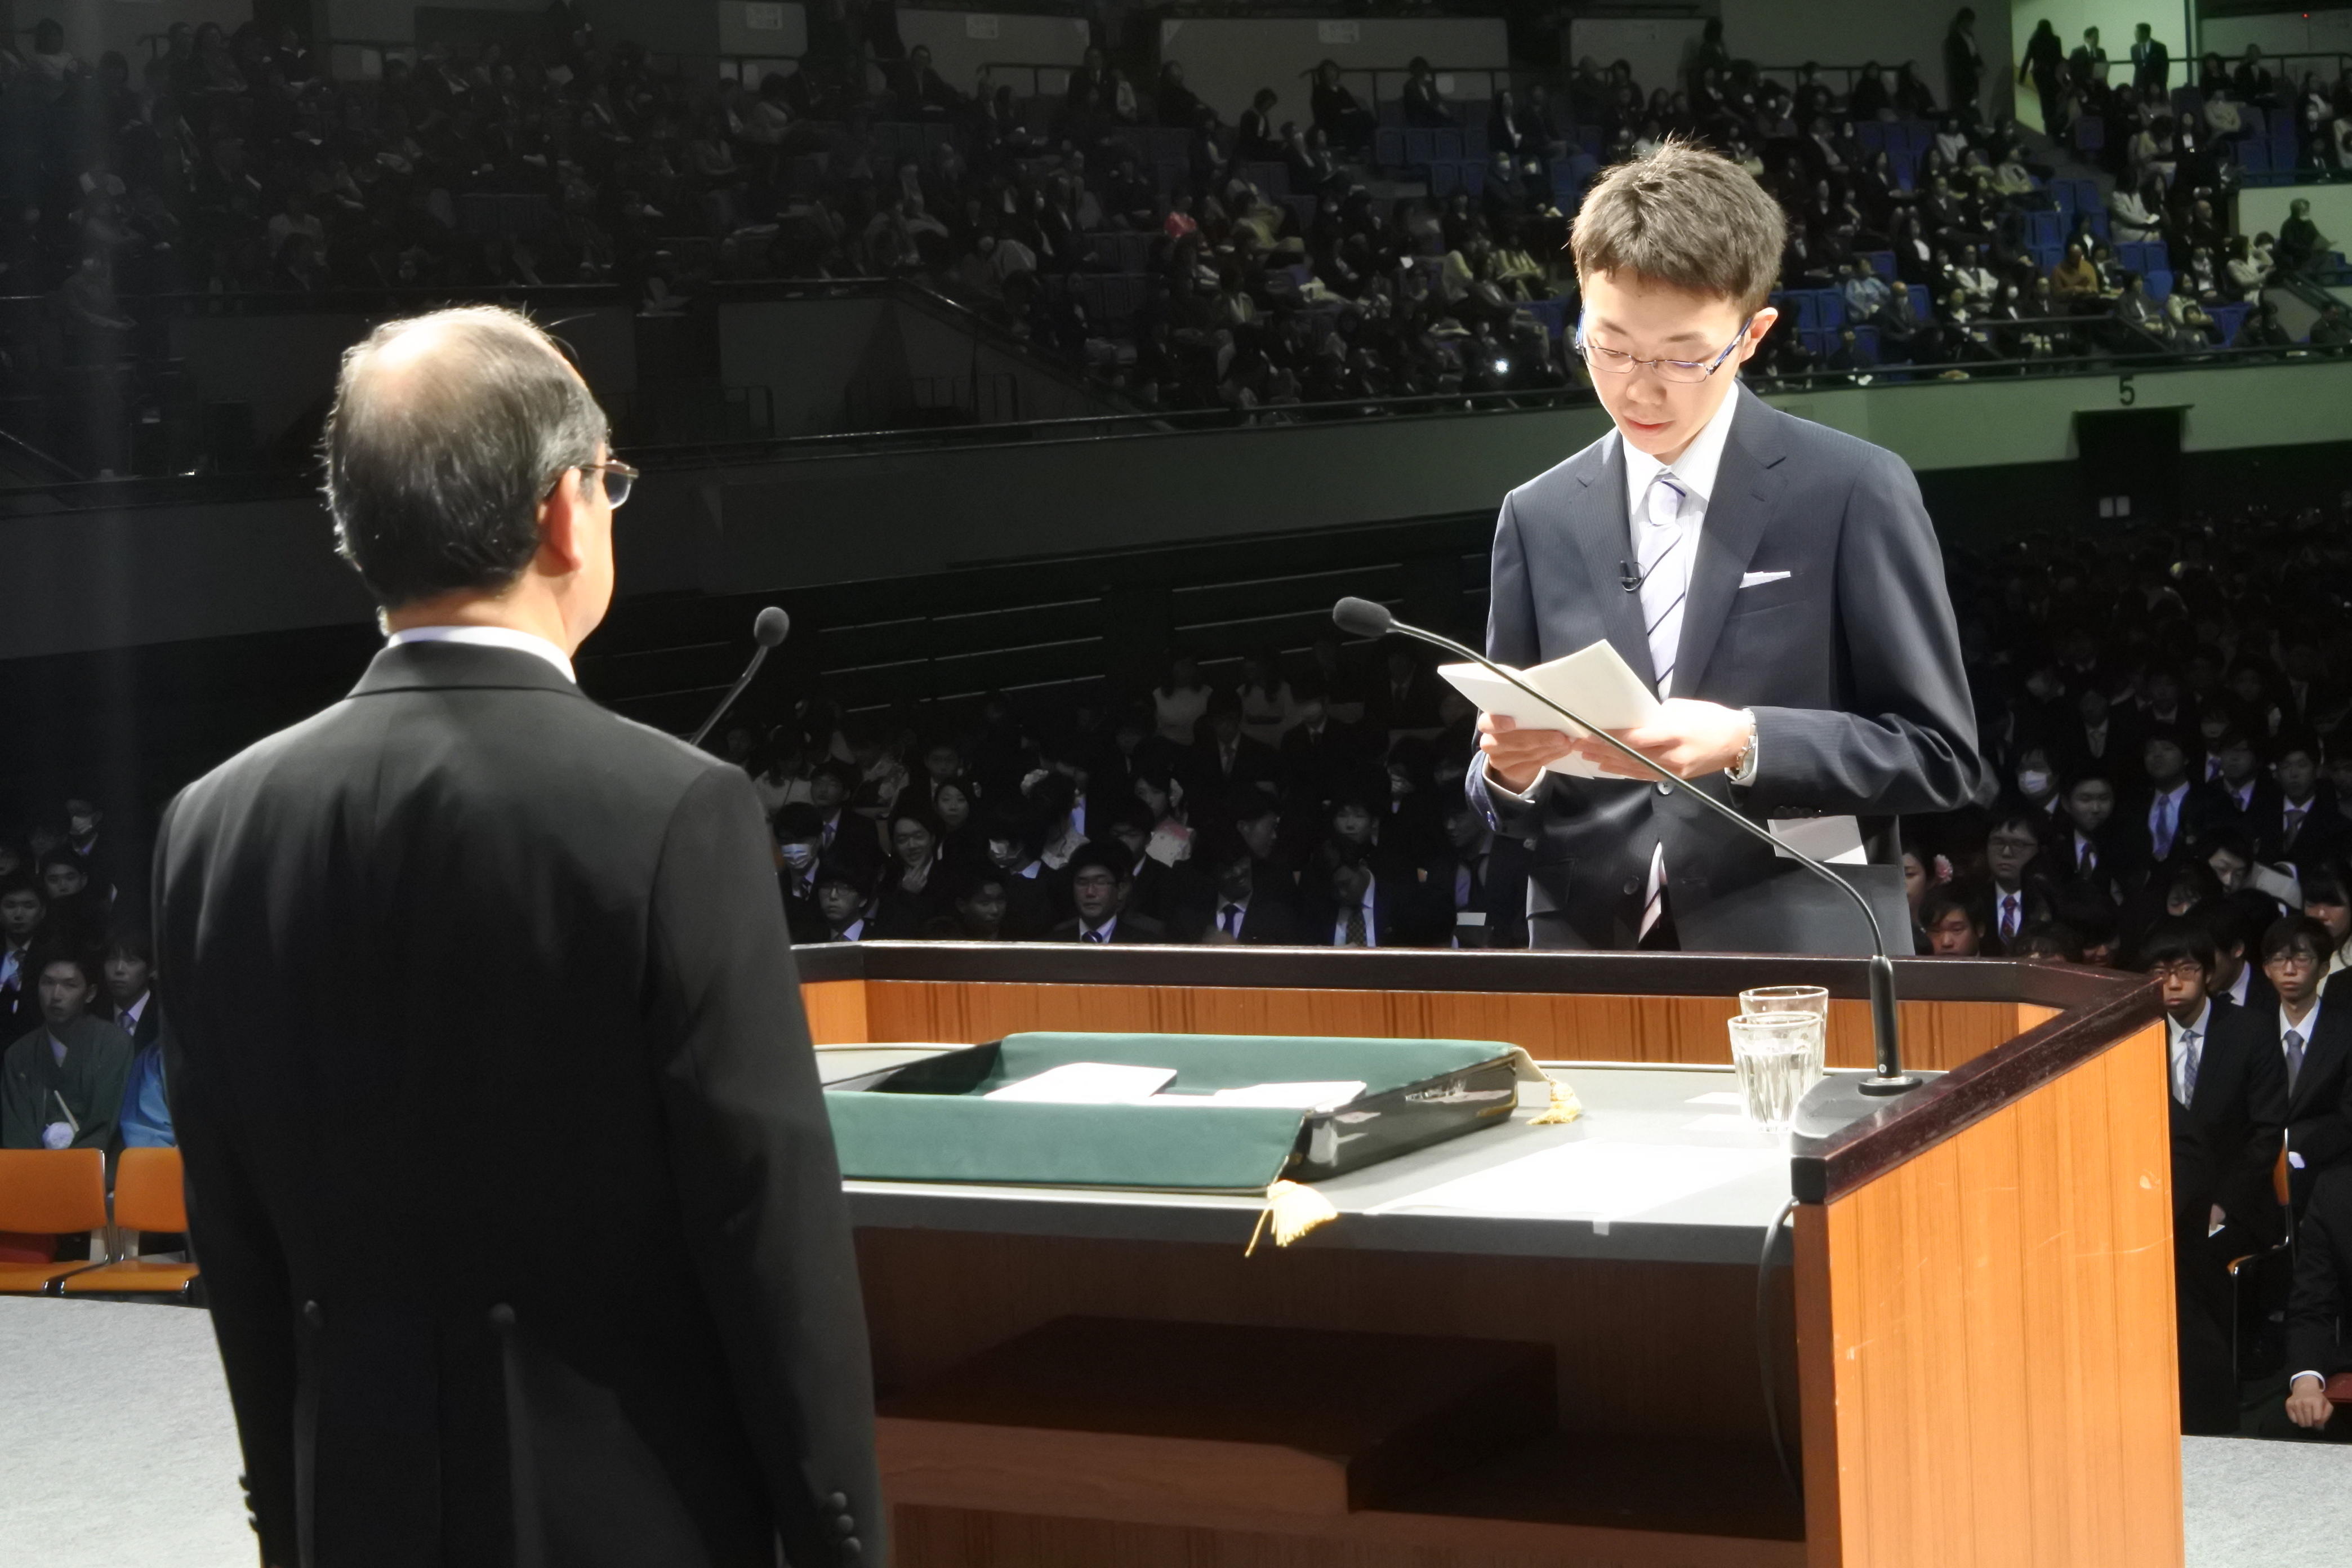 吉久光一学長に向かって答辞を読み上げる法学部法学科の保木翔太さん